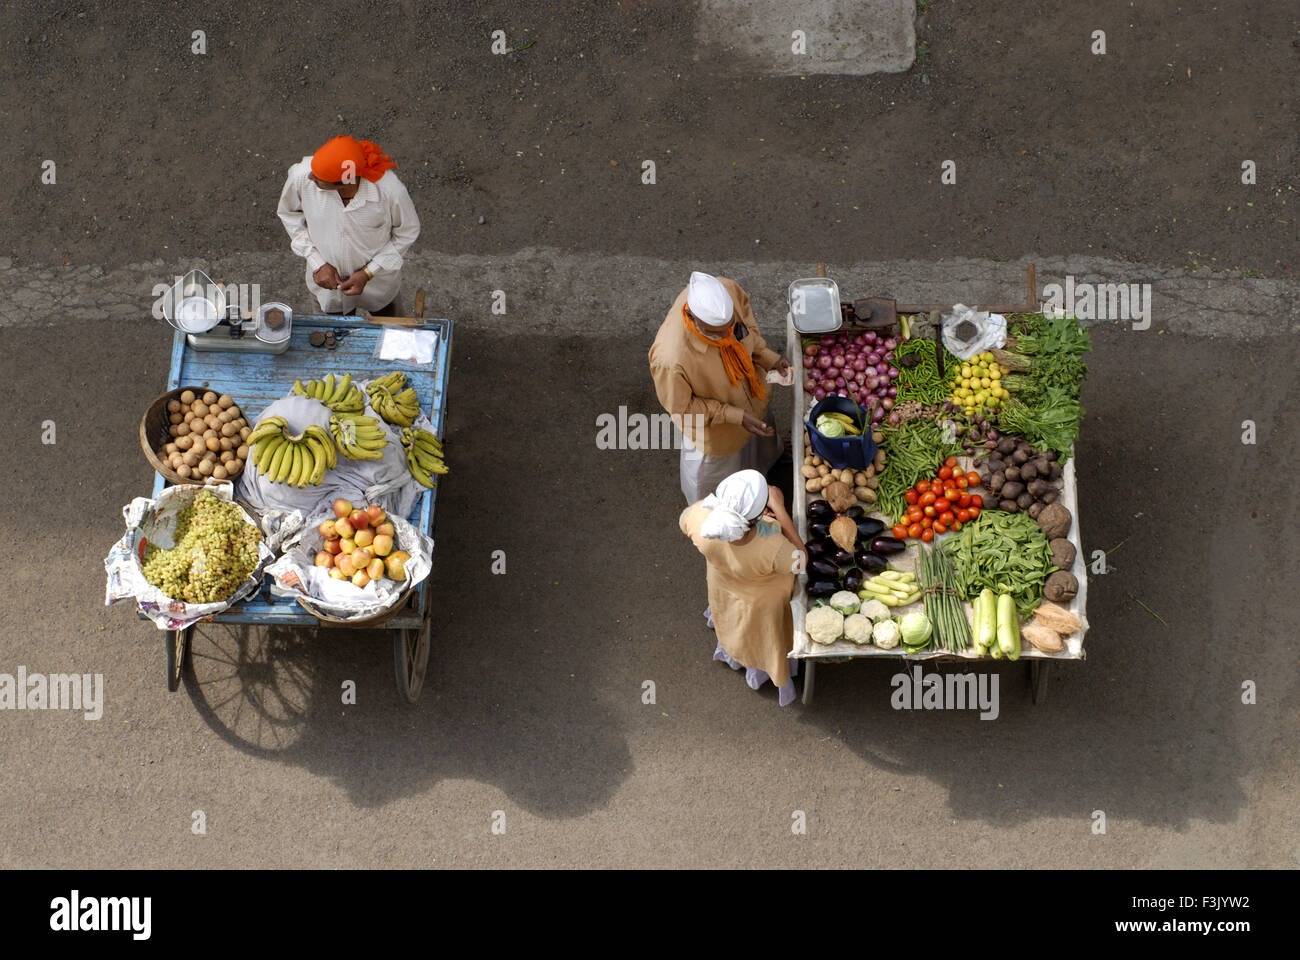 Luftaufnahme von zwei Handkarren und zwei Verkäufern ein mit verschiedenen Früchten und anderen mit Gemüse eine Frau Käufer bei Pune Maharashtra india Stockfoto